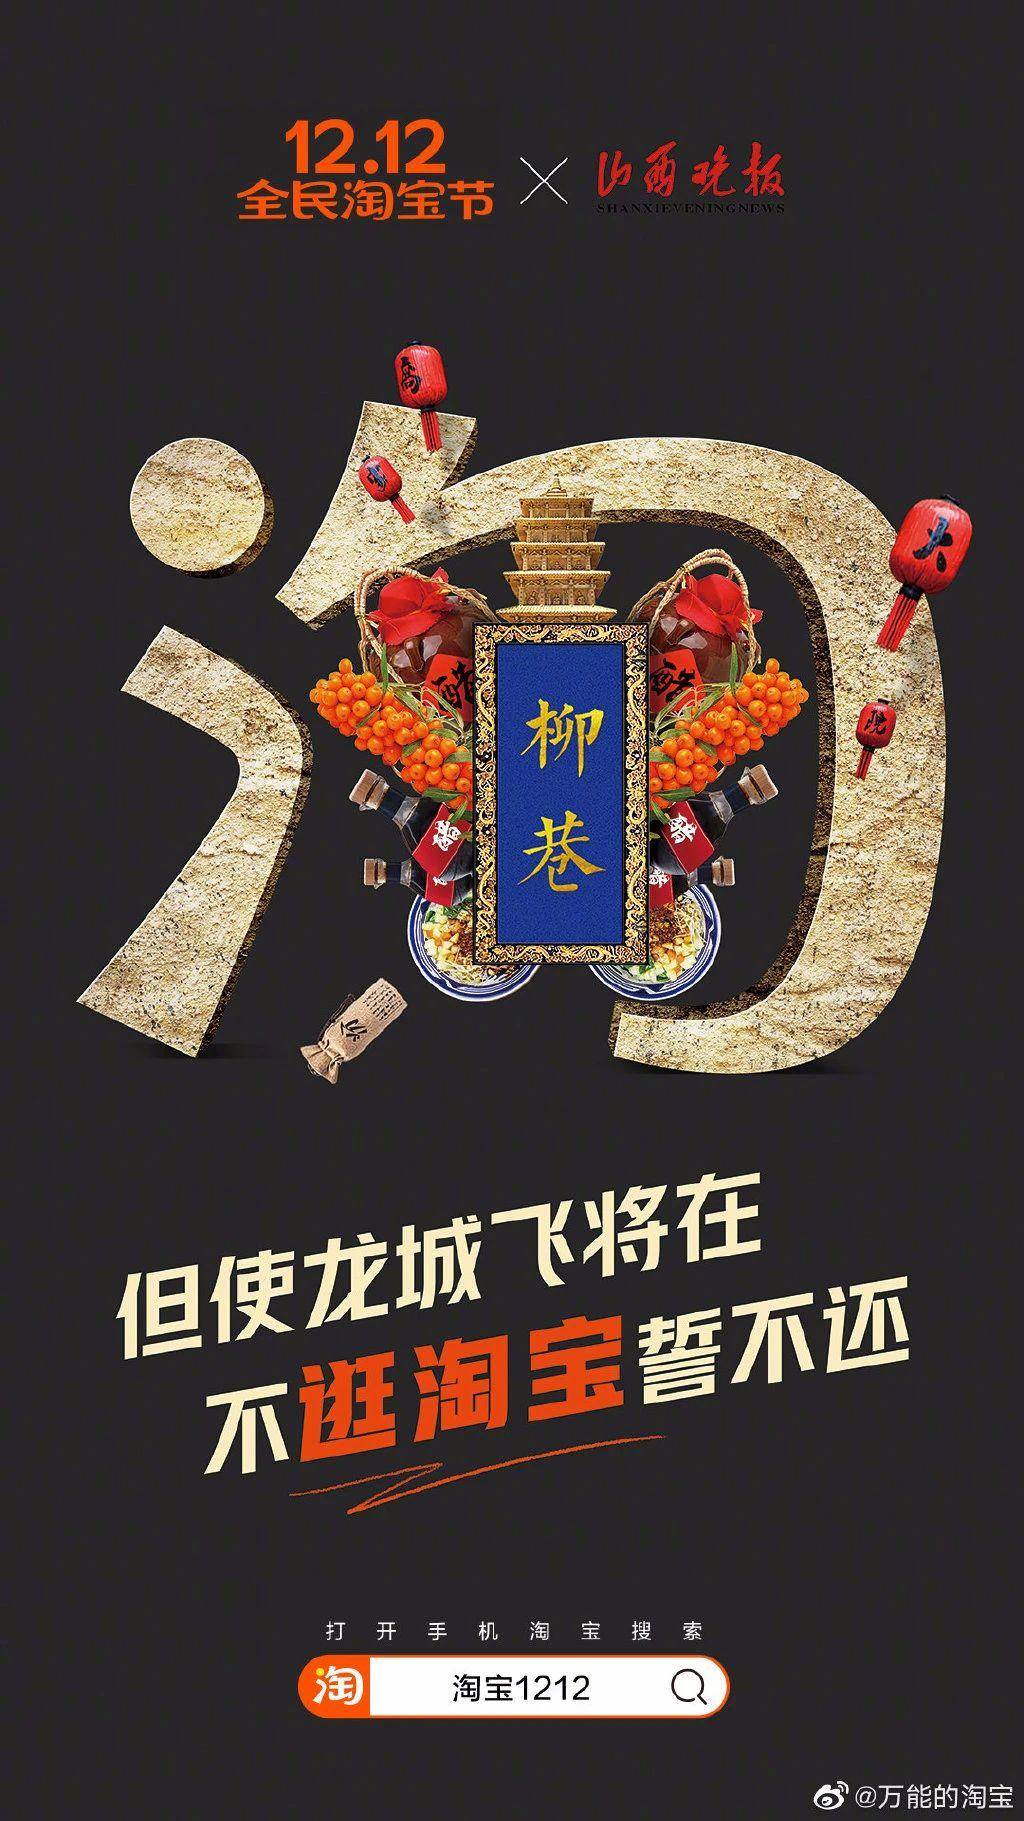 以中国34省市为主题，淘宝1212海报设计